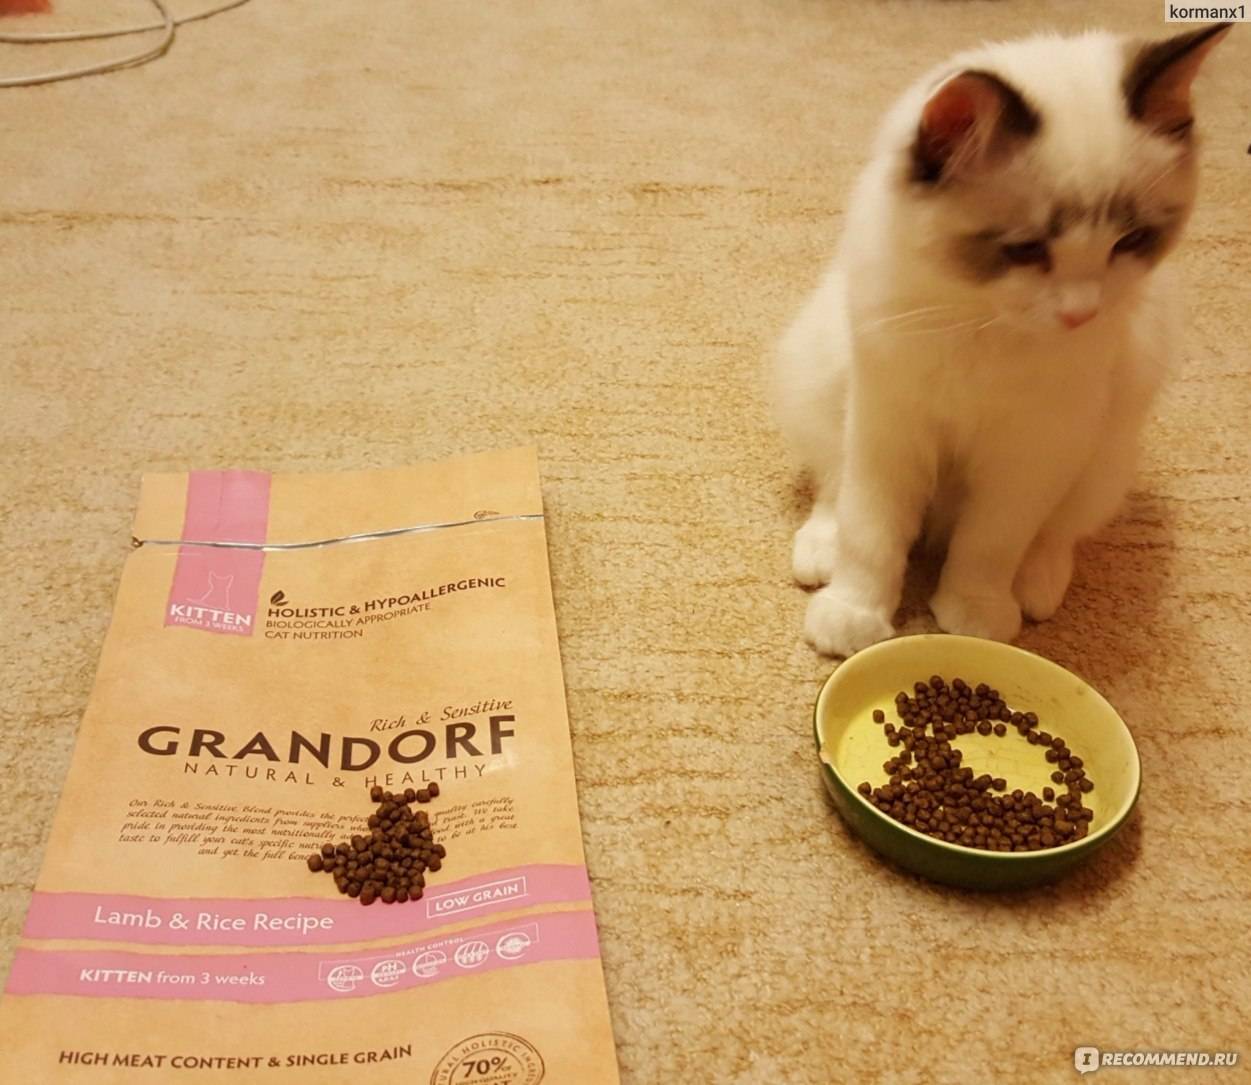 Корм «грандорф» («grandorf») для кошек – полезно и вкусно